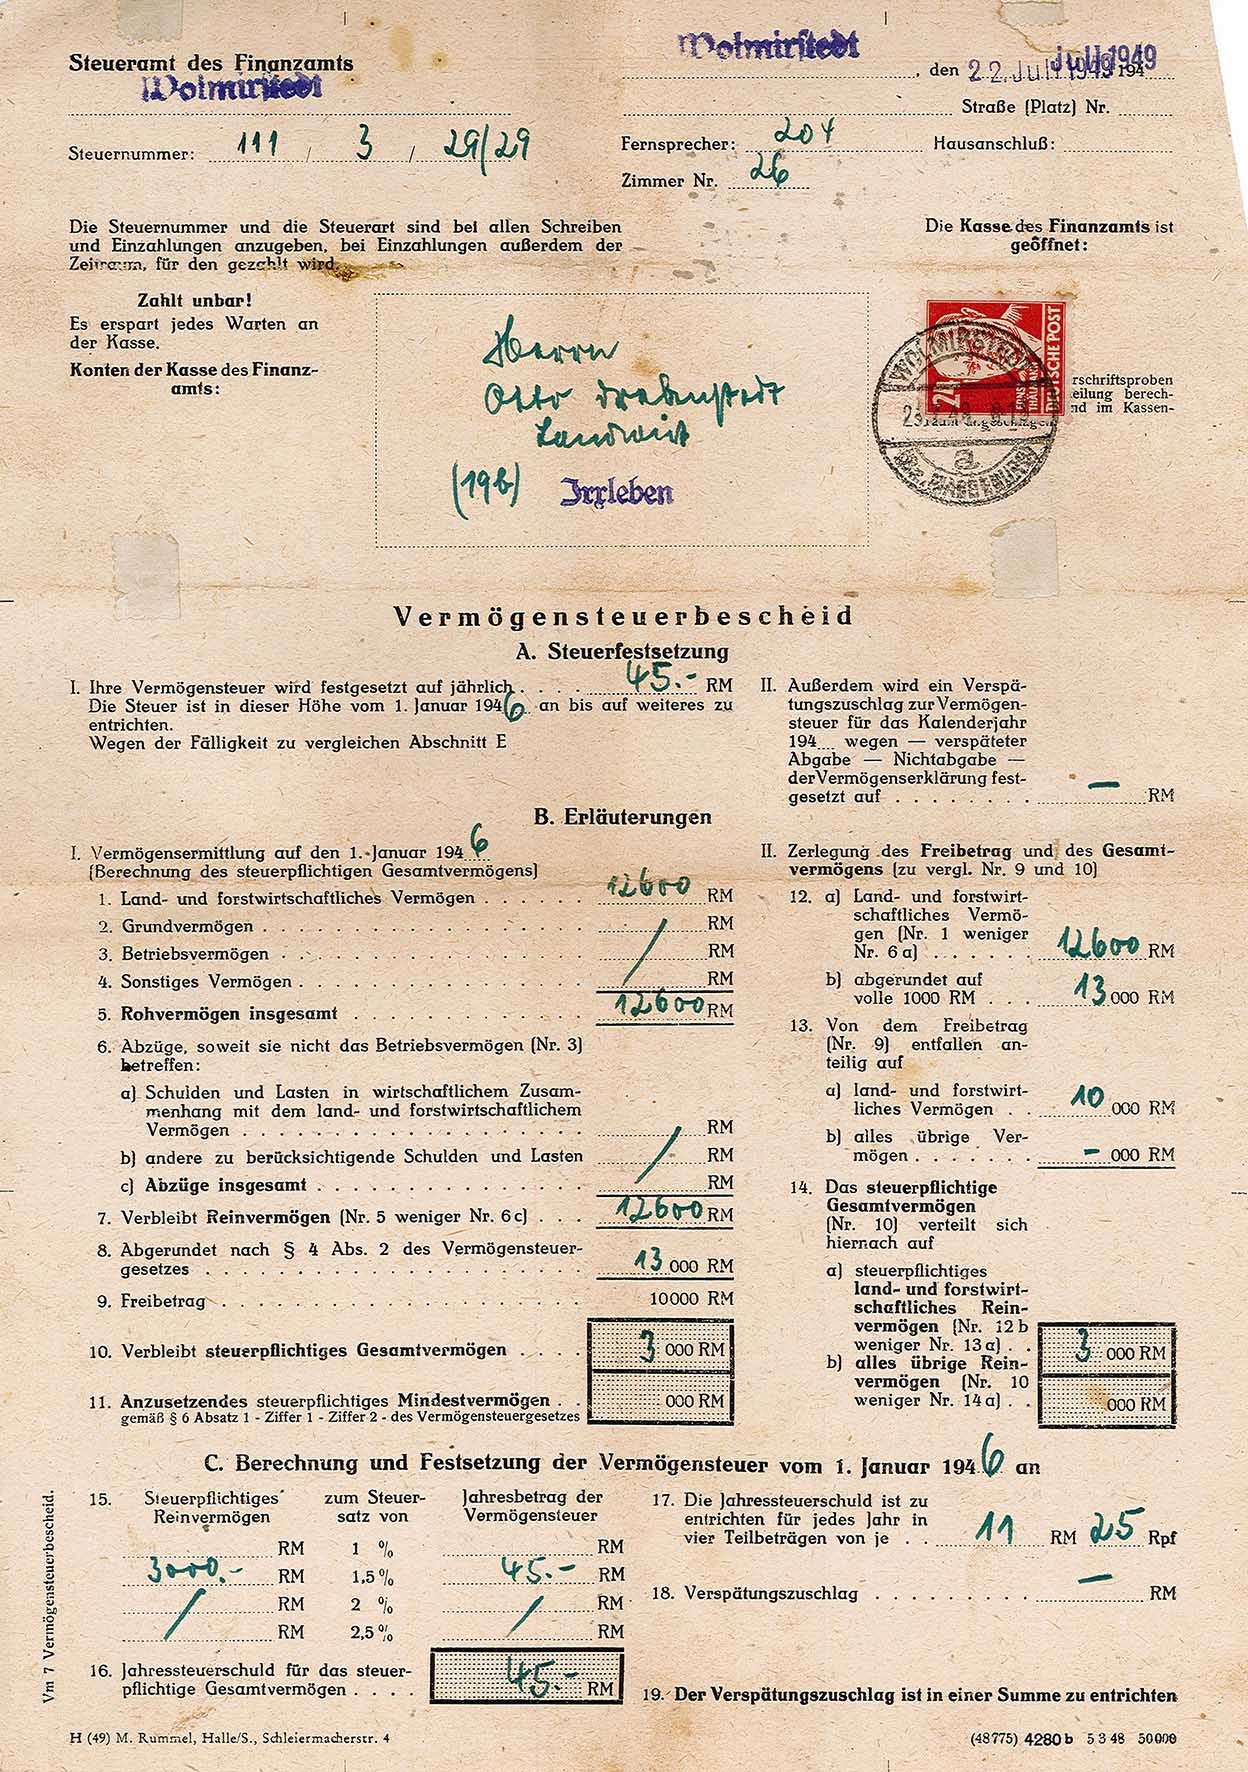 Vermögenssteuerbescheid für Otto Drebenstedt für das Jahr 1946, 22. Juli 1949 (Museum Wolmirstedt RR-F)